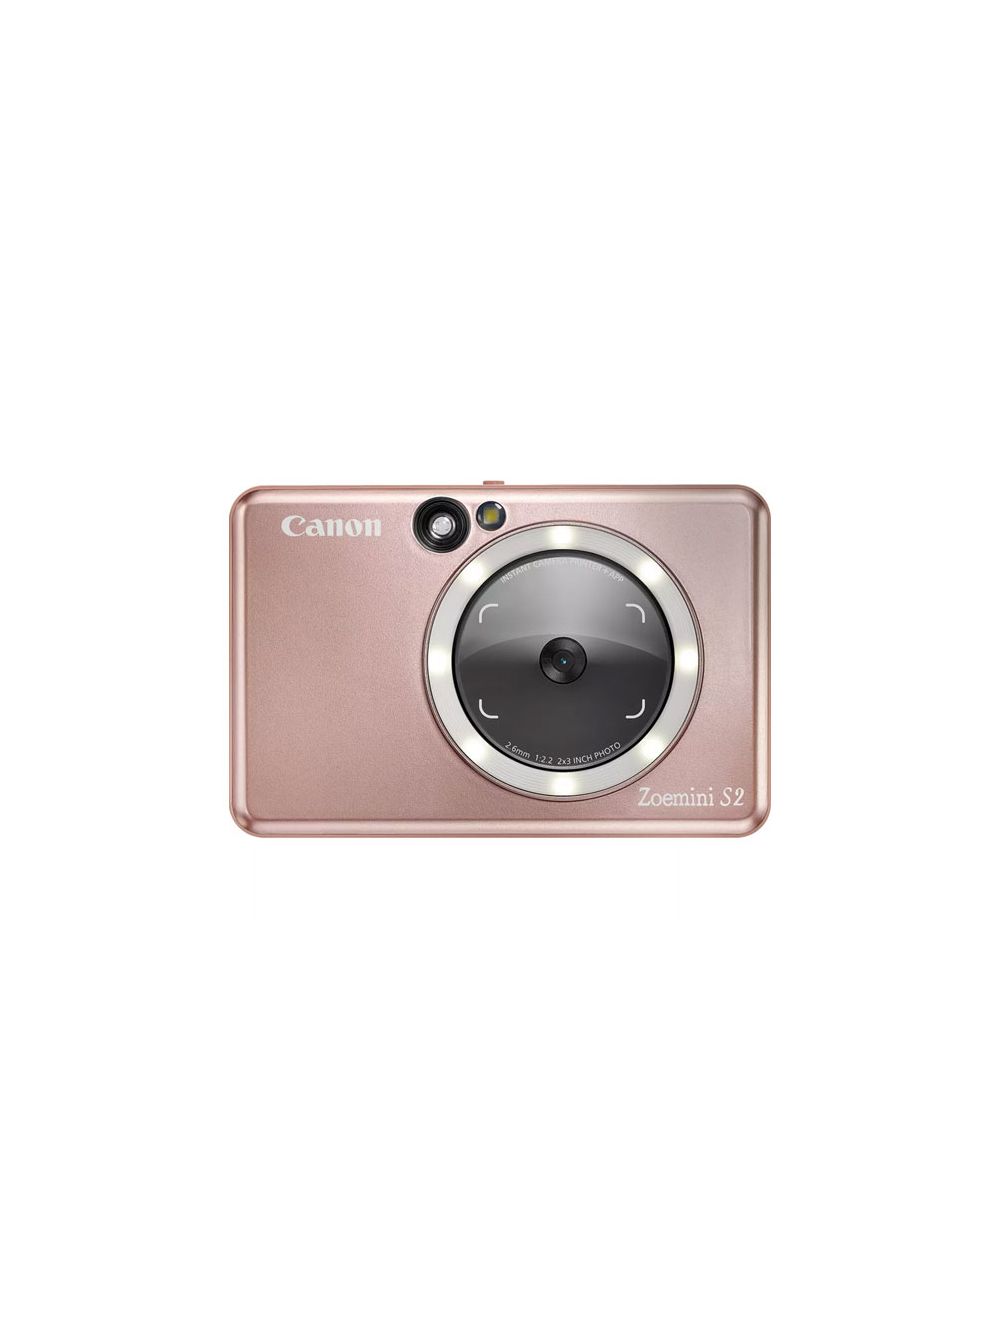 Canon Zoemini S2 Instant Camera Color Photo Printer - Rose Gold - ZV223